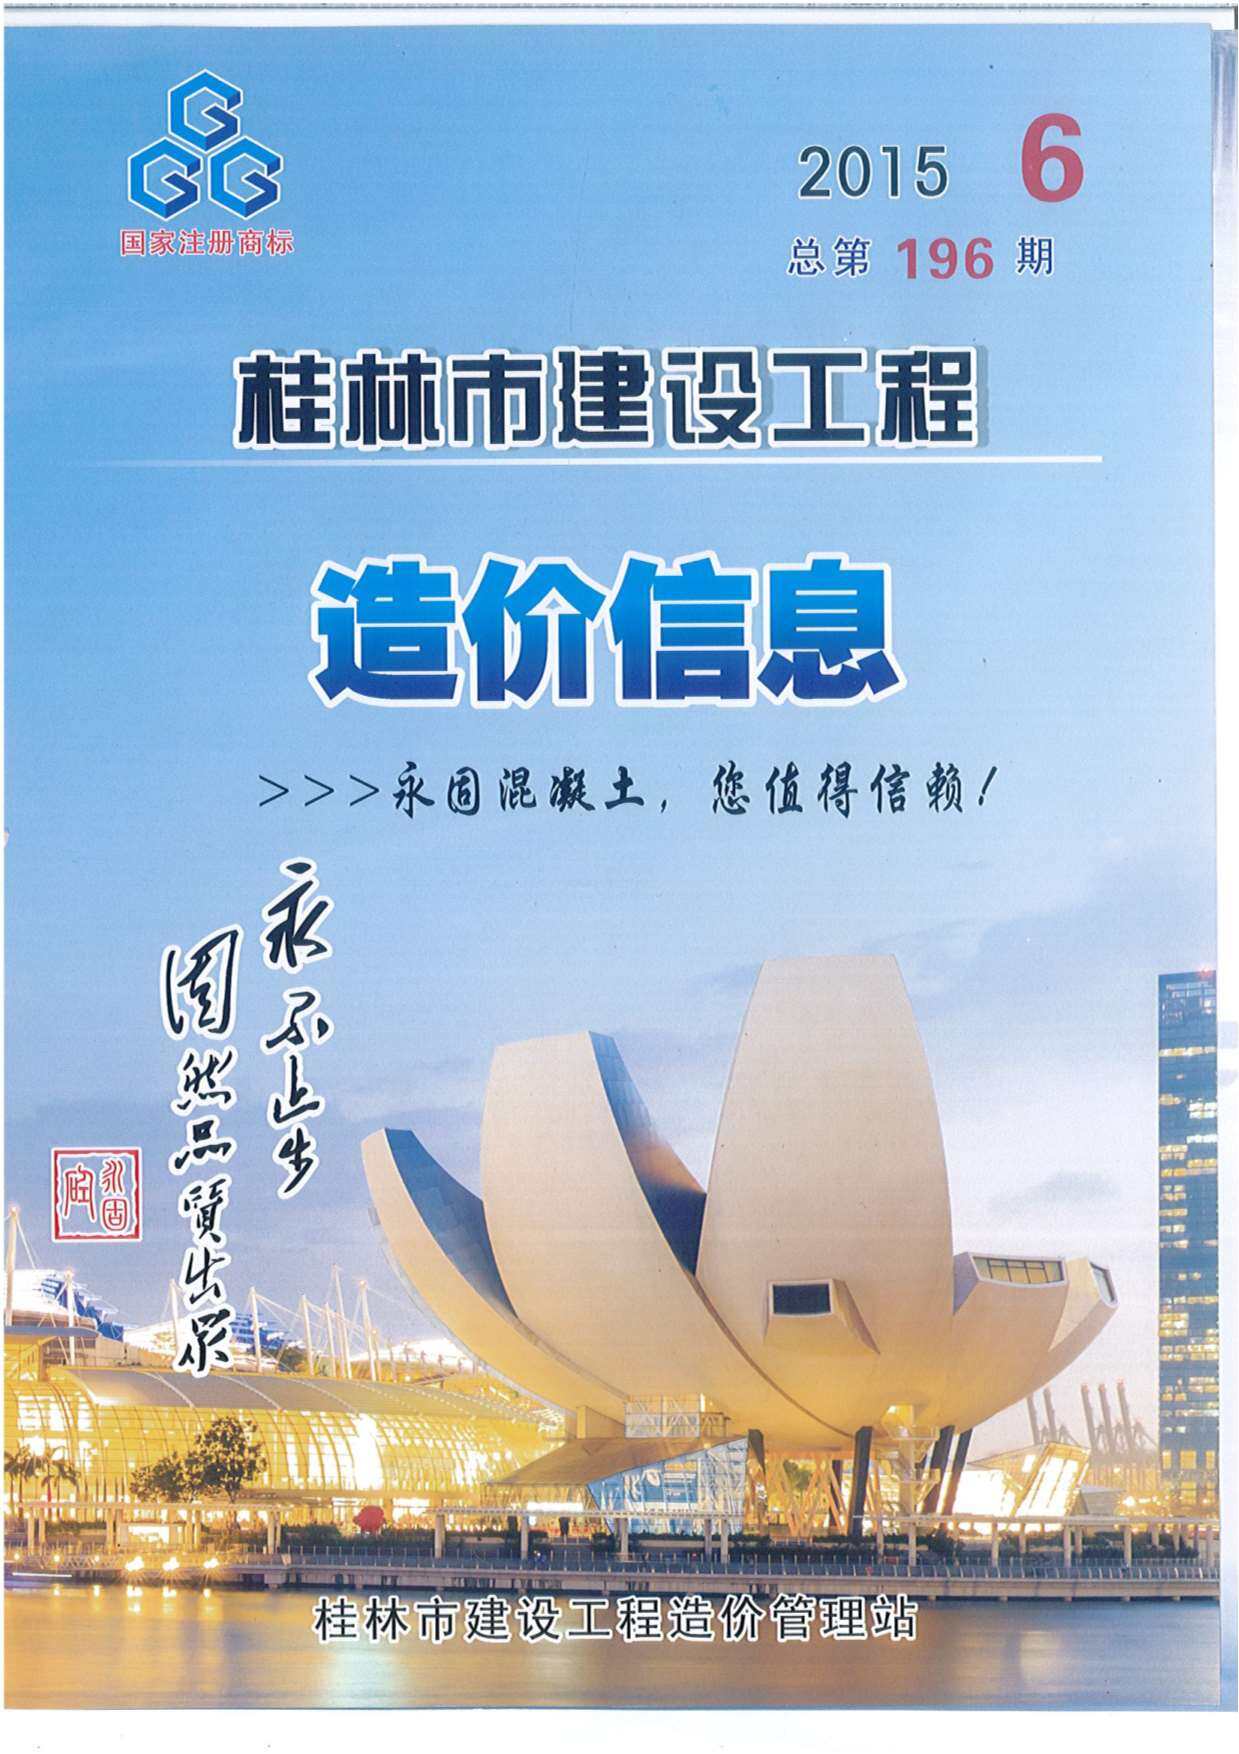 桂林市2015年6月工程造价信息期刊